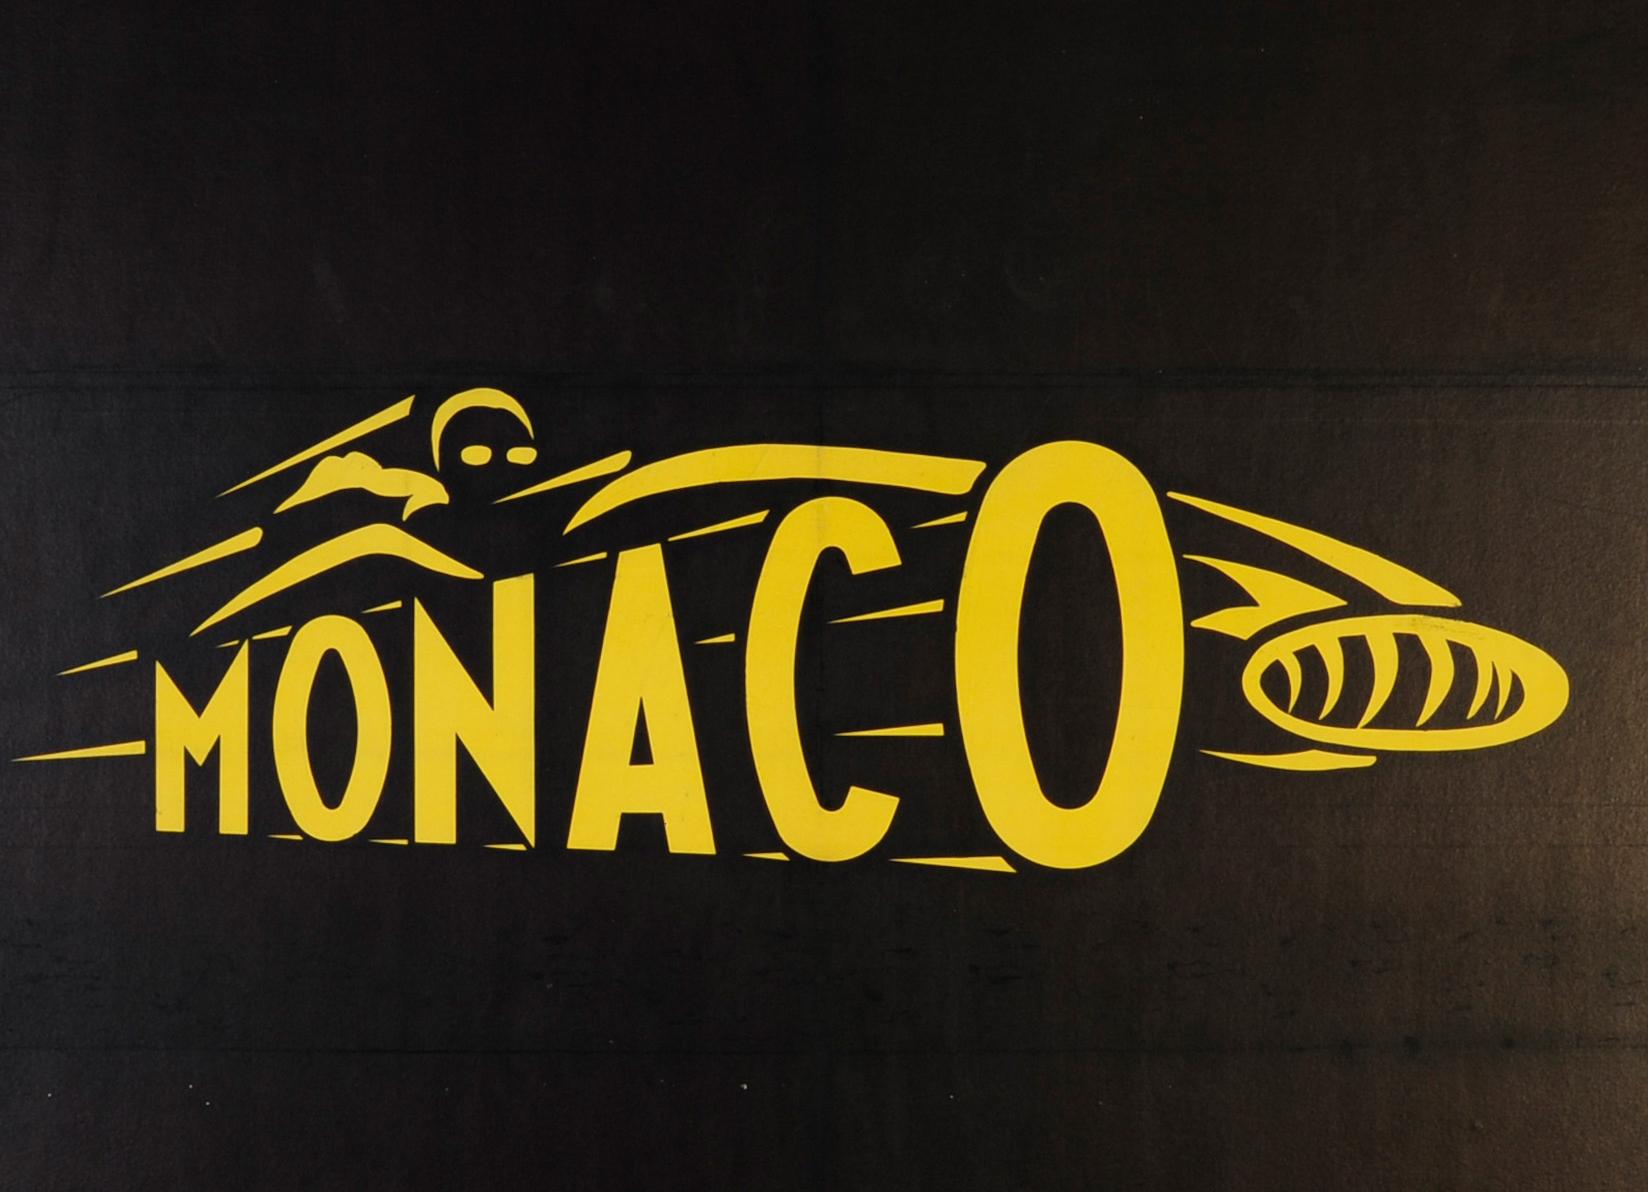 Affiche sportive originale pour le Grand Prix de Monaco 1961, course automobile de Formule 1 organisée sur le circuit de Monaco à Monte-Carlo, comportant une superbe illustration sur fond sombre du mot Monaco en jaune stylisé comme une voiture de